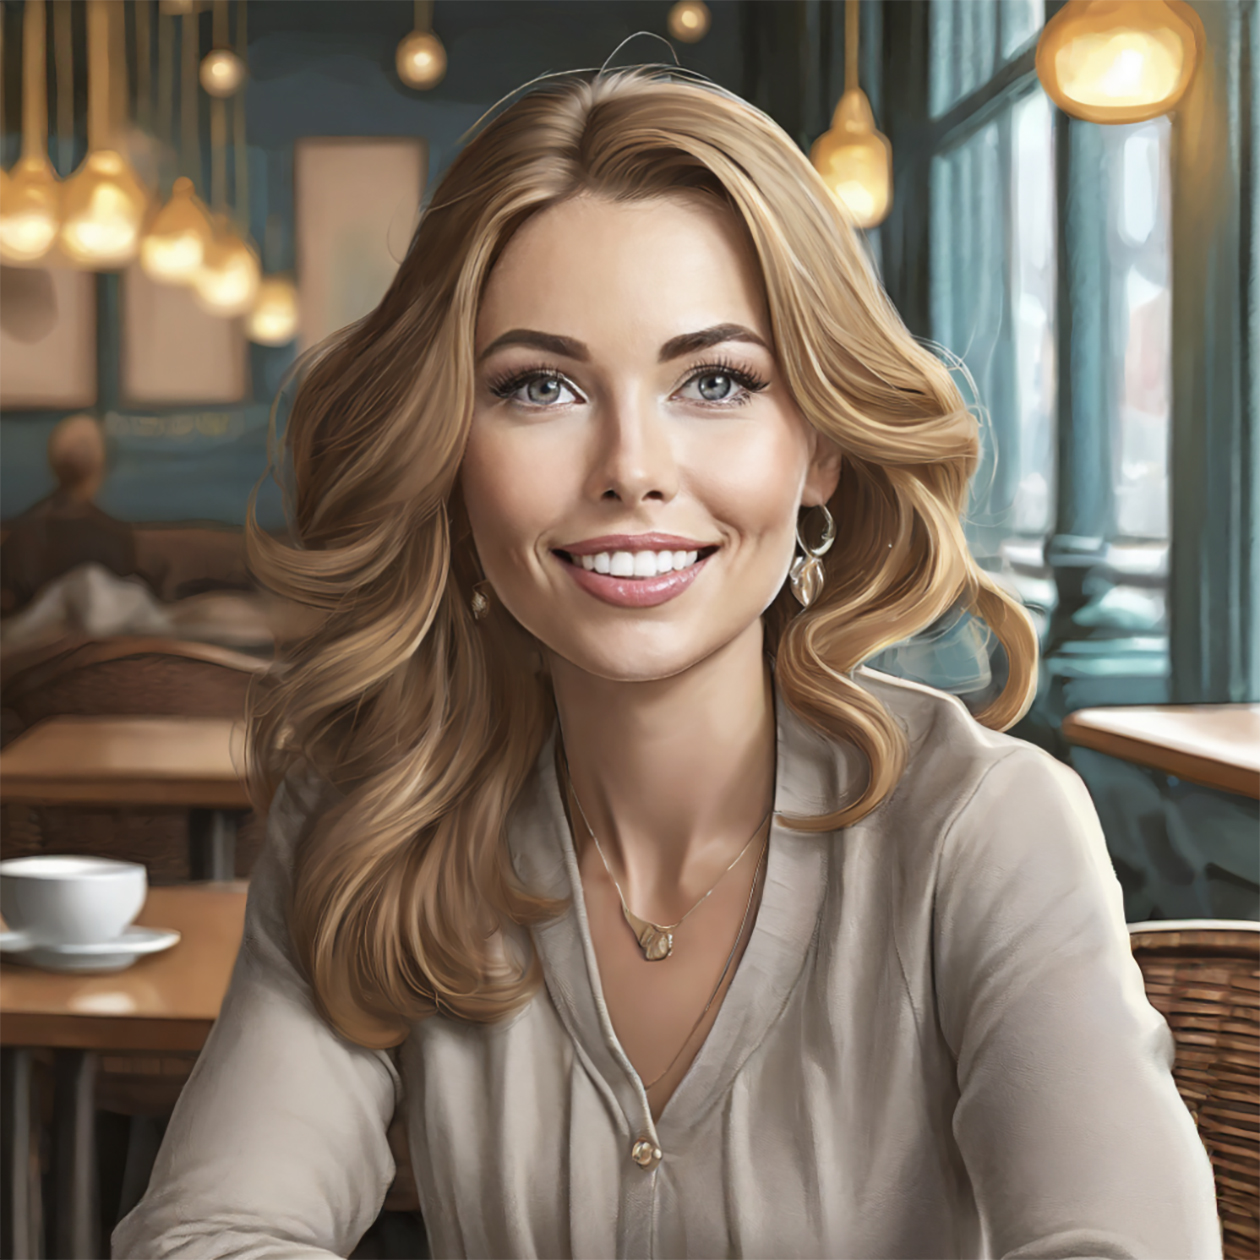 Иллюстрация в стиле реализм с красивой девушкой в кафе без детального описания внешности, настройки освещения не выбраны